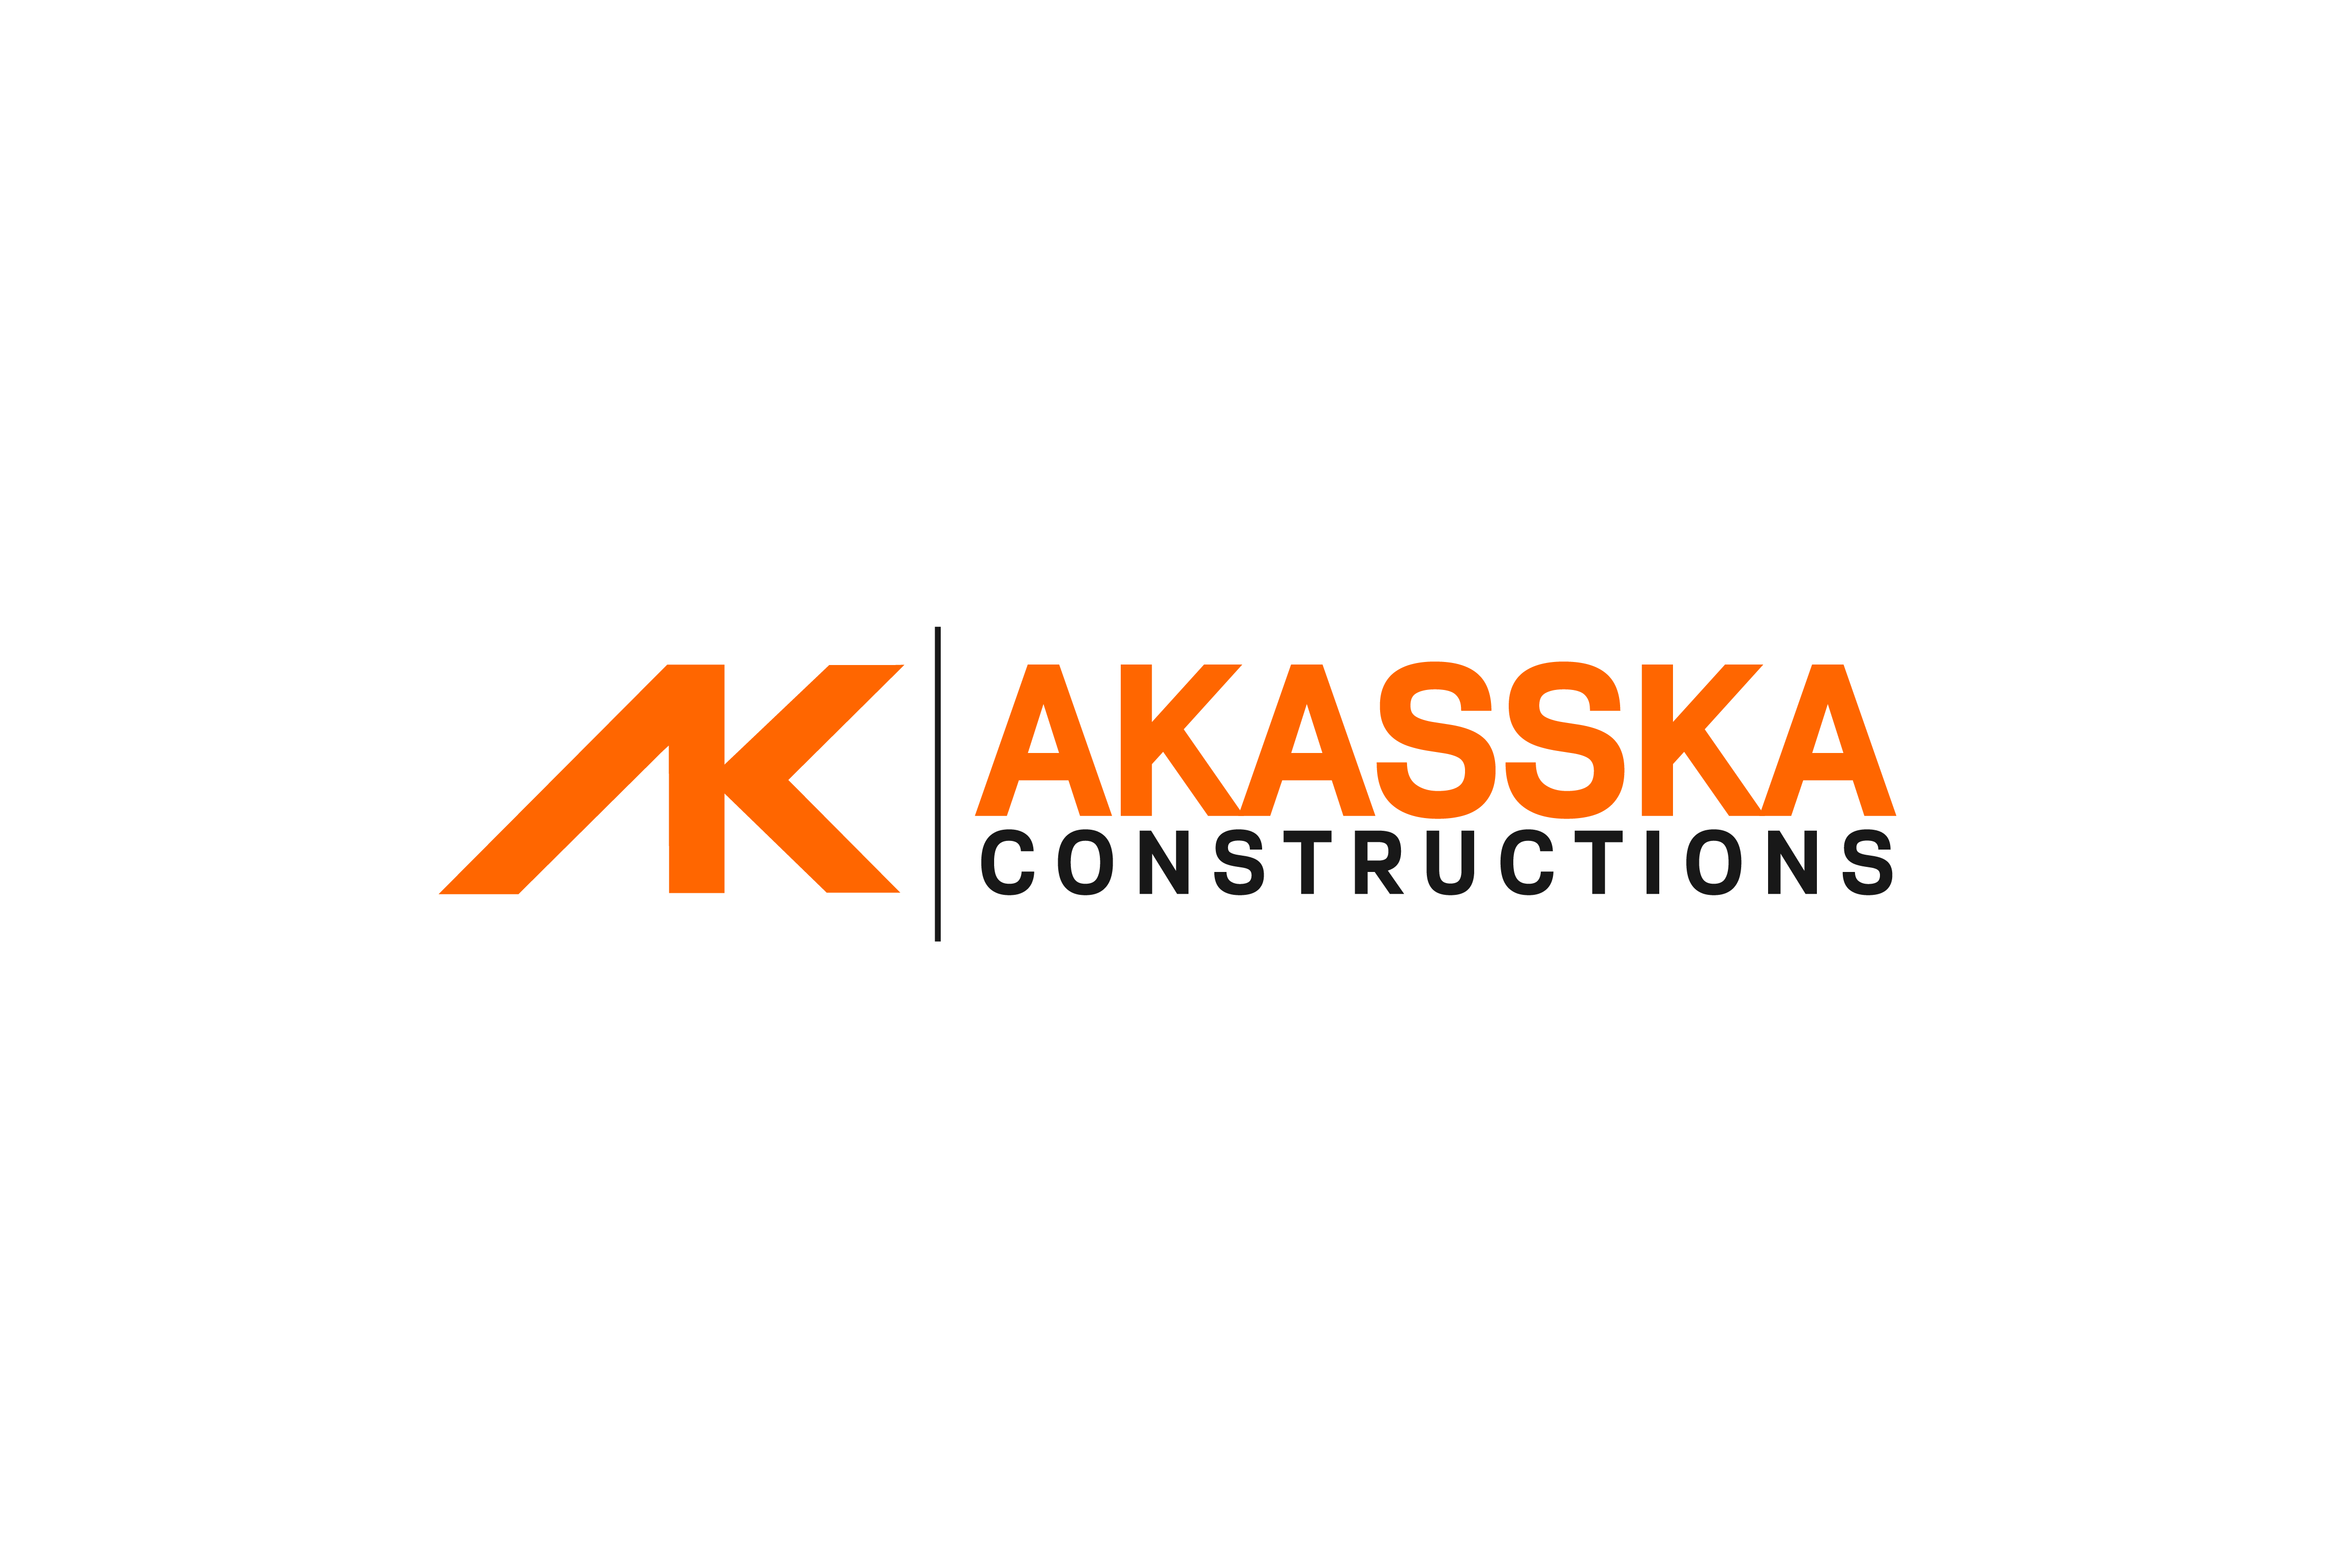 Akasska Constructions